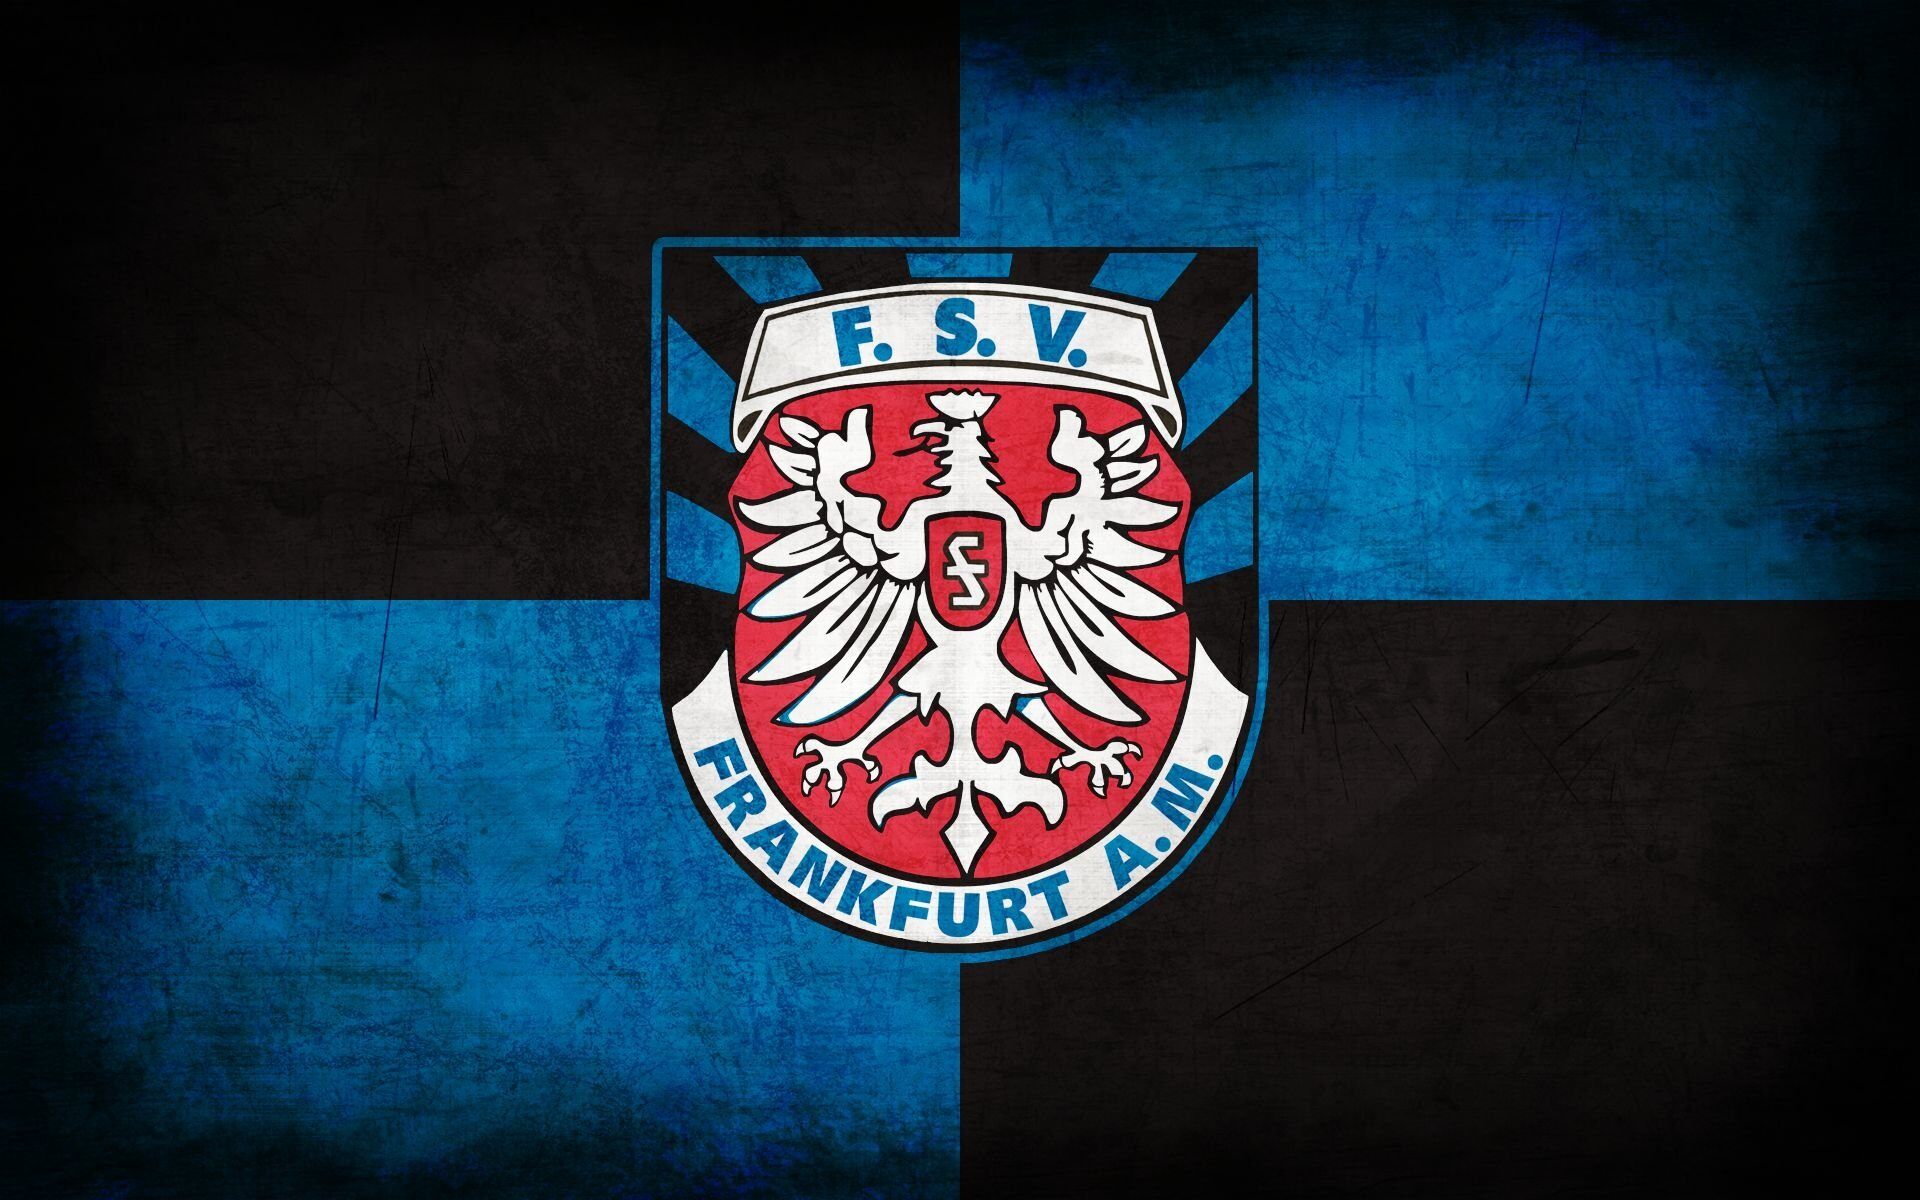 fsv-frankfurt-u17-13-football-club-facts